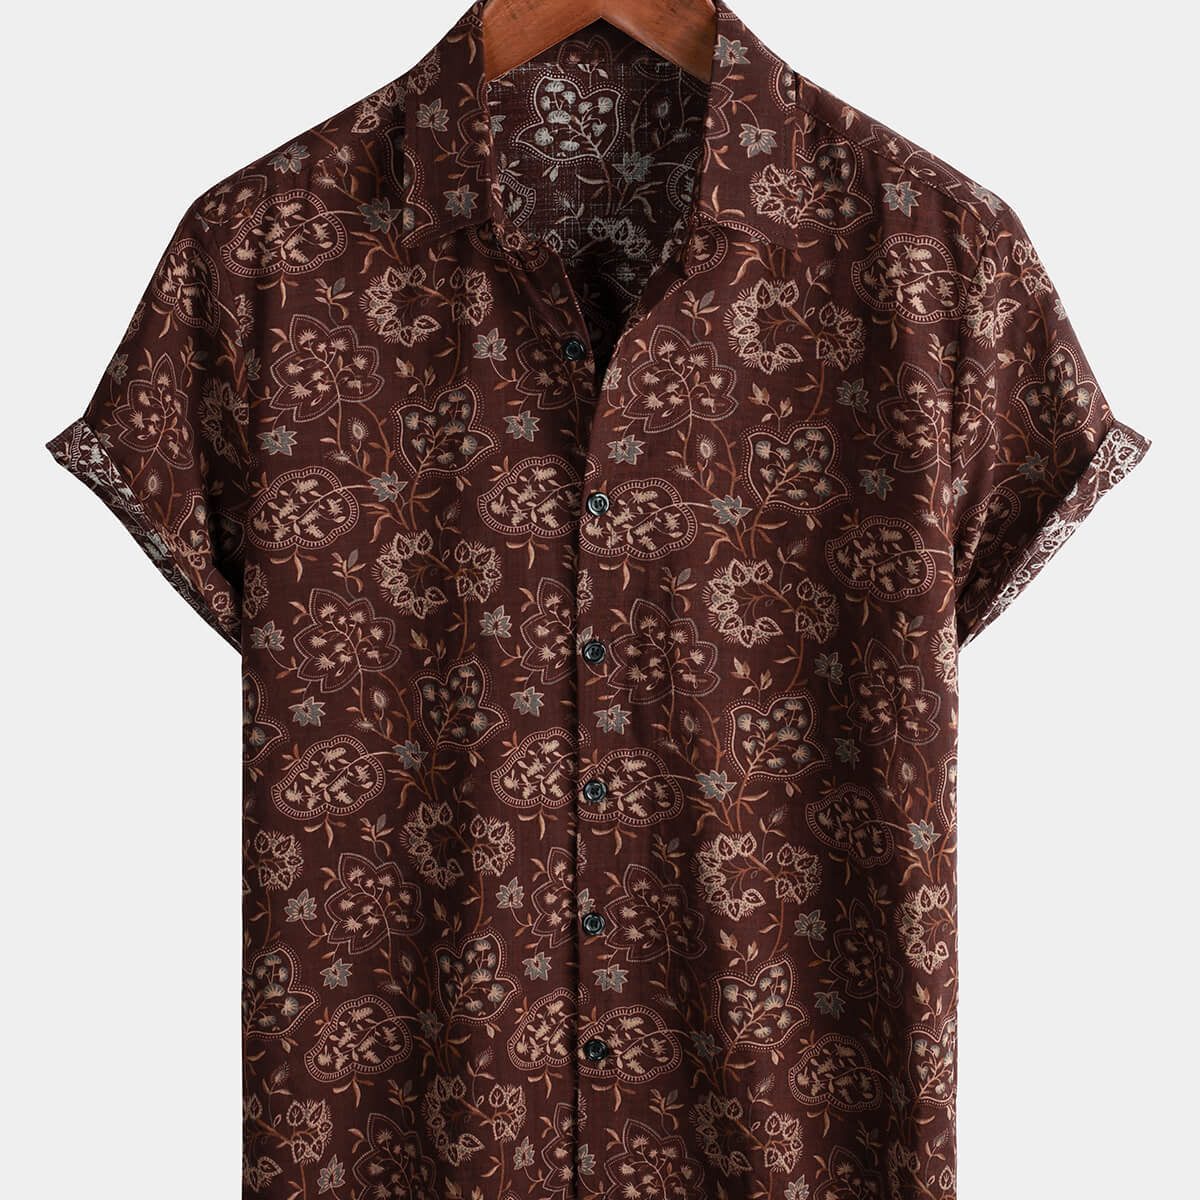 Camisa de manga corta color burdeos con botones retro floral vintage de Paisley para hombre